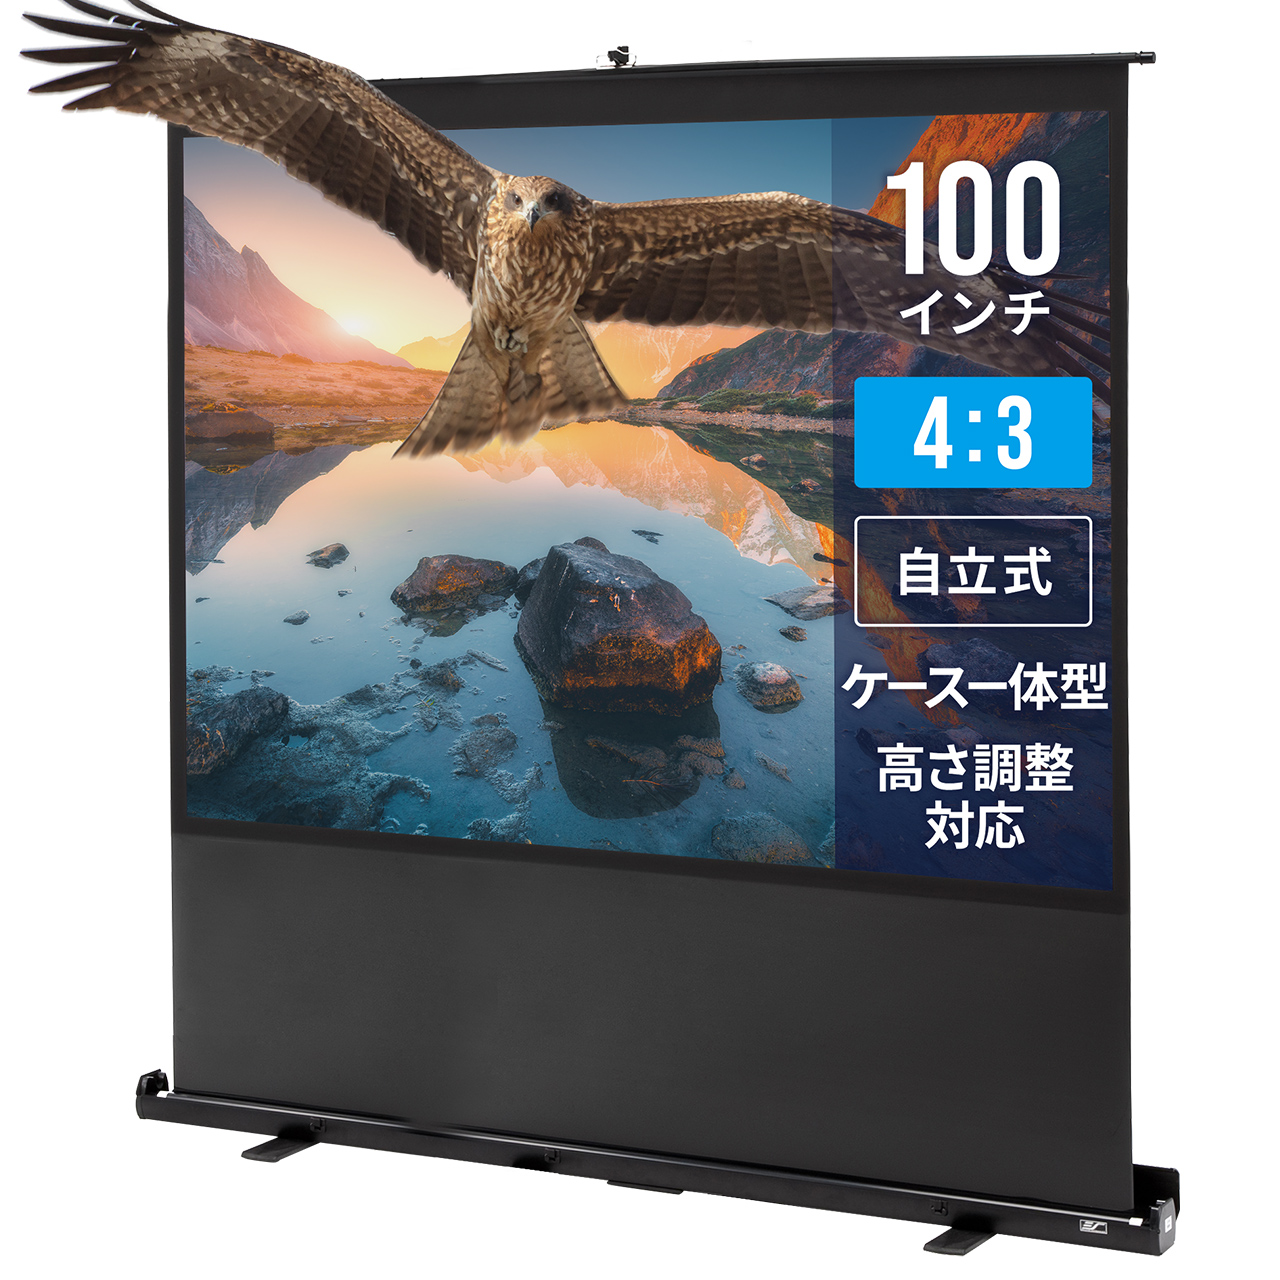 プロジェクタースクリーン 100インチ 自立式床置き型 ロールスクリーン 選挙グッズ 100-PRS009 |サンワダイレクト